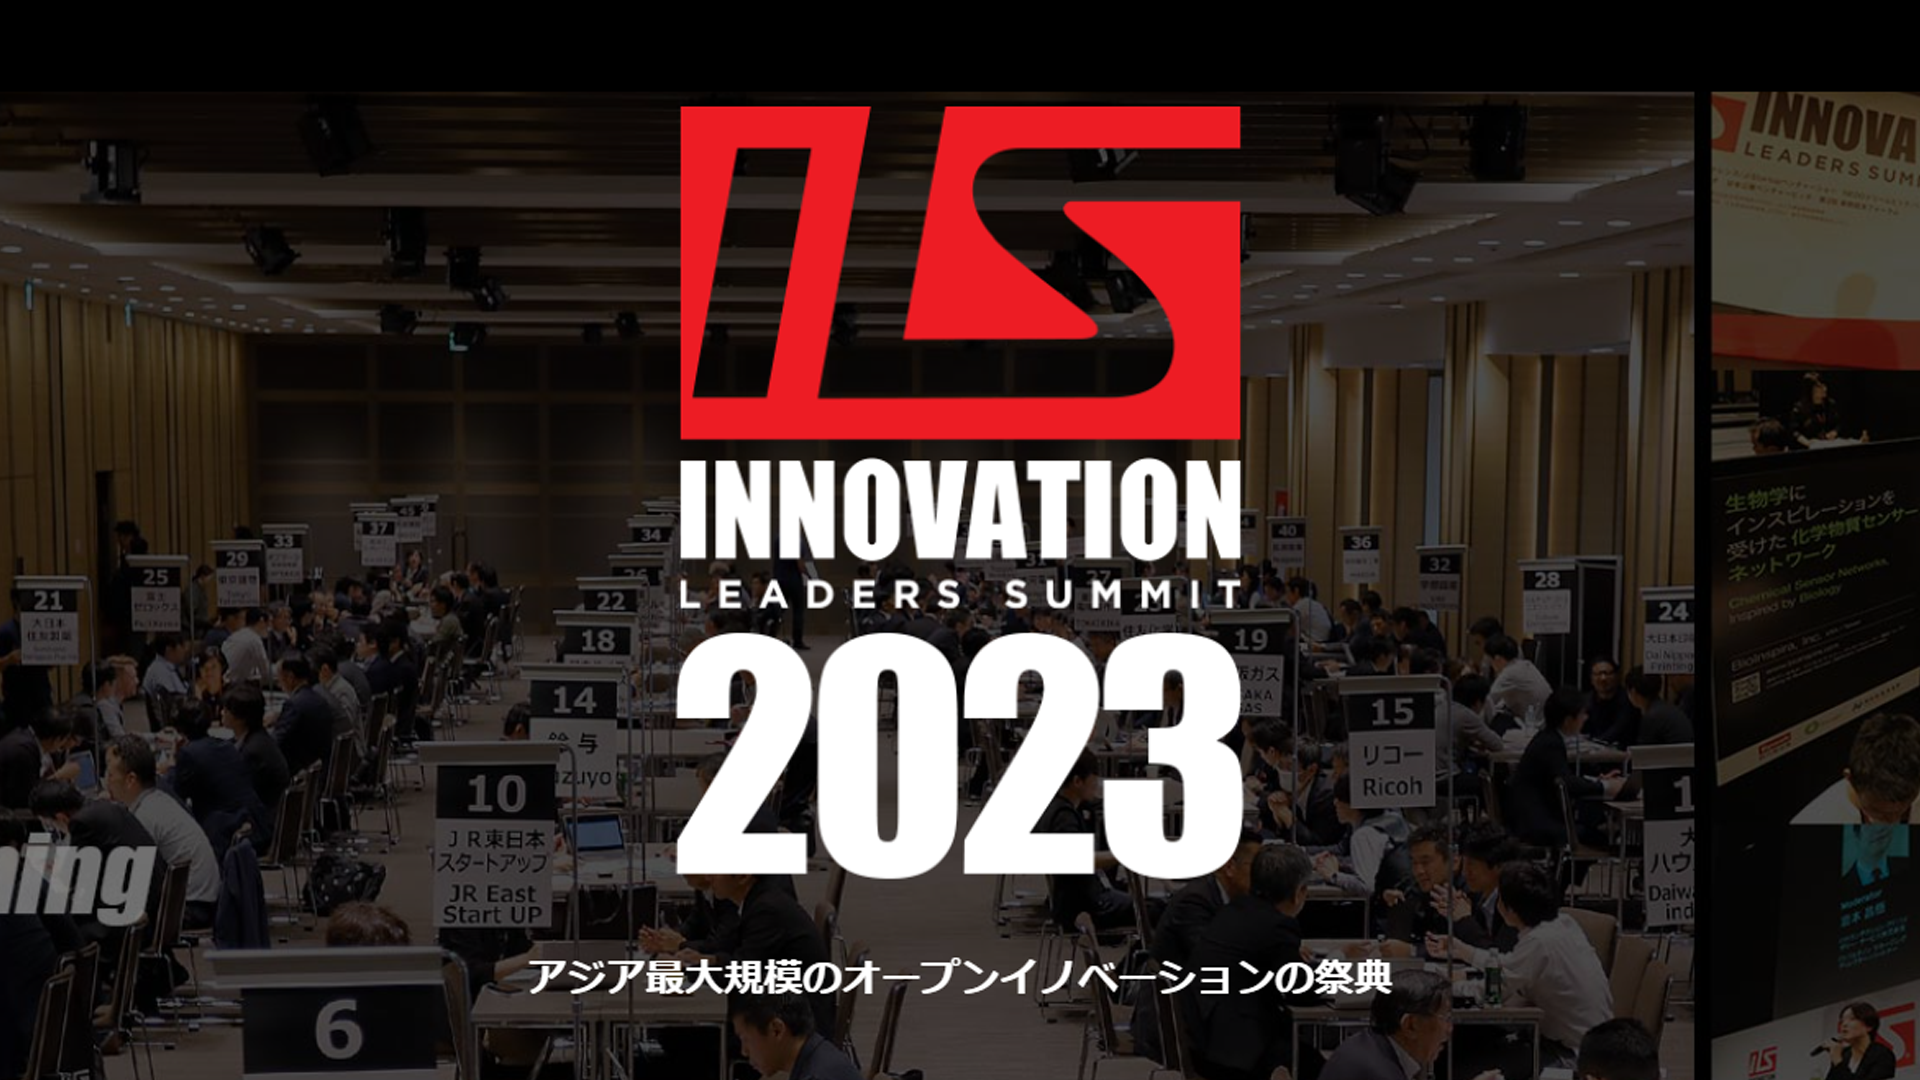 アジア最大規模のオープンイノベーションの祭典『ILS2023』のパワーマッチングにおいて「ILS TOP100 STARTUPS」に選出されました。のサムネイル